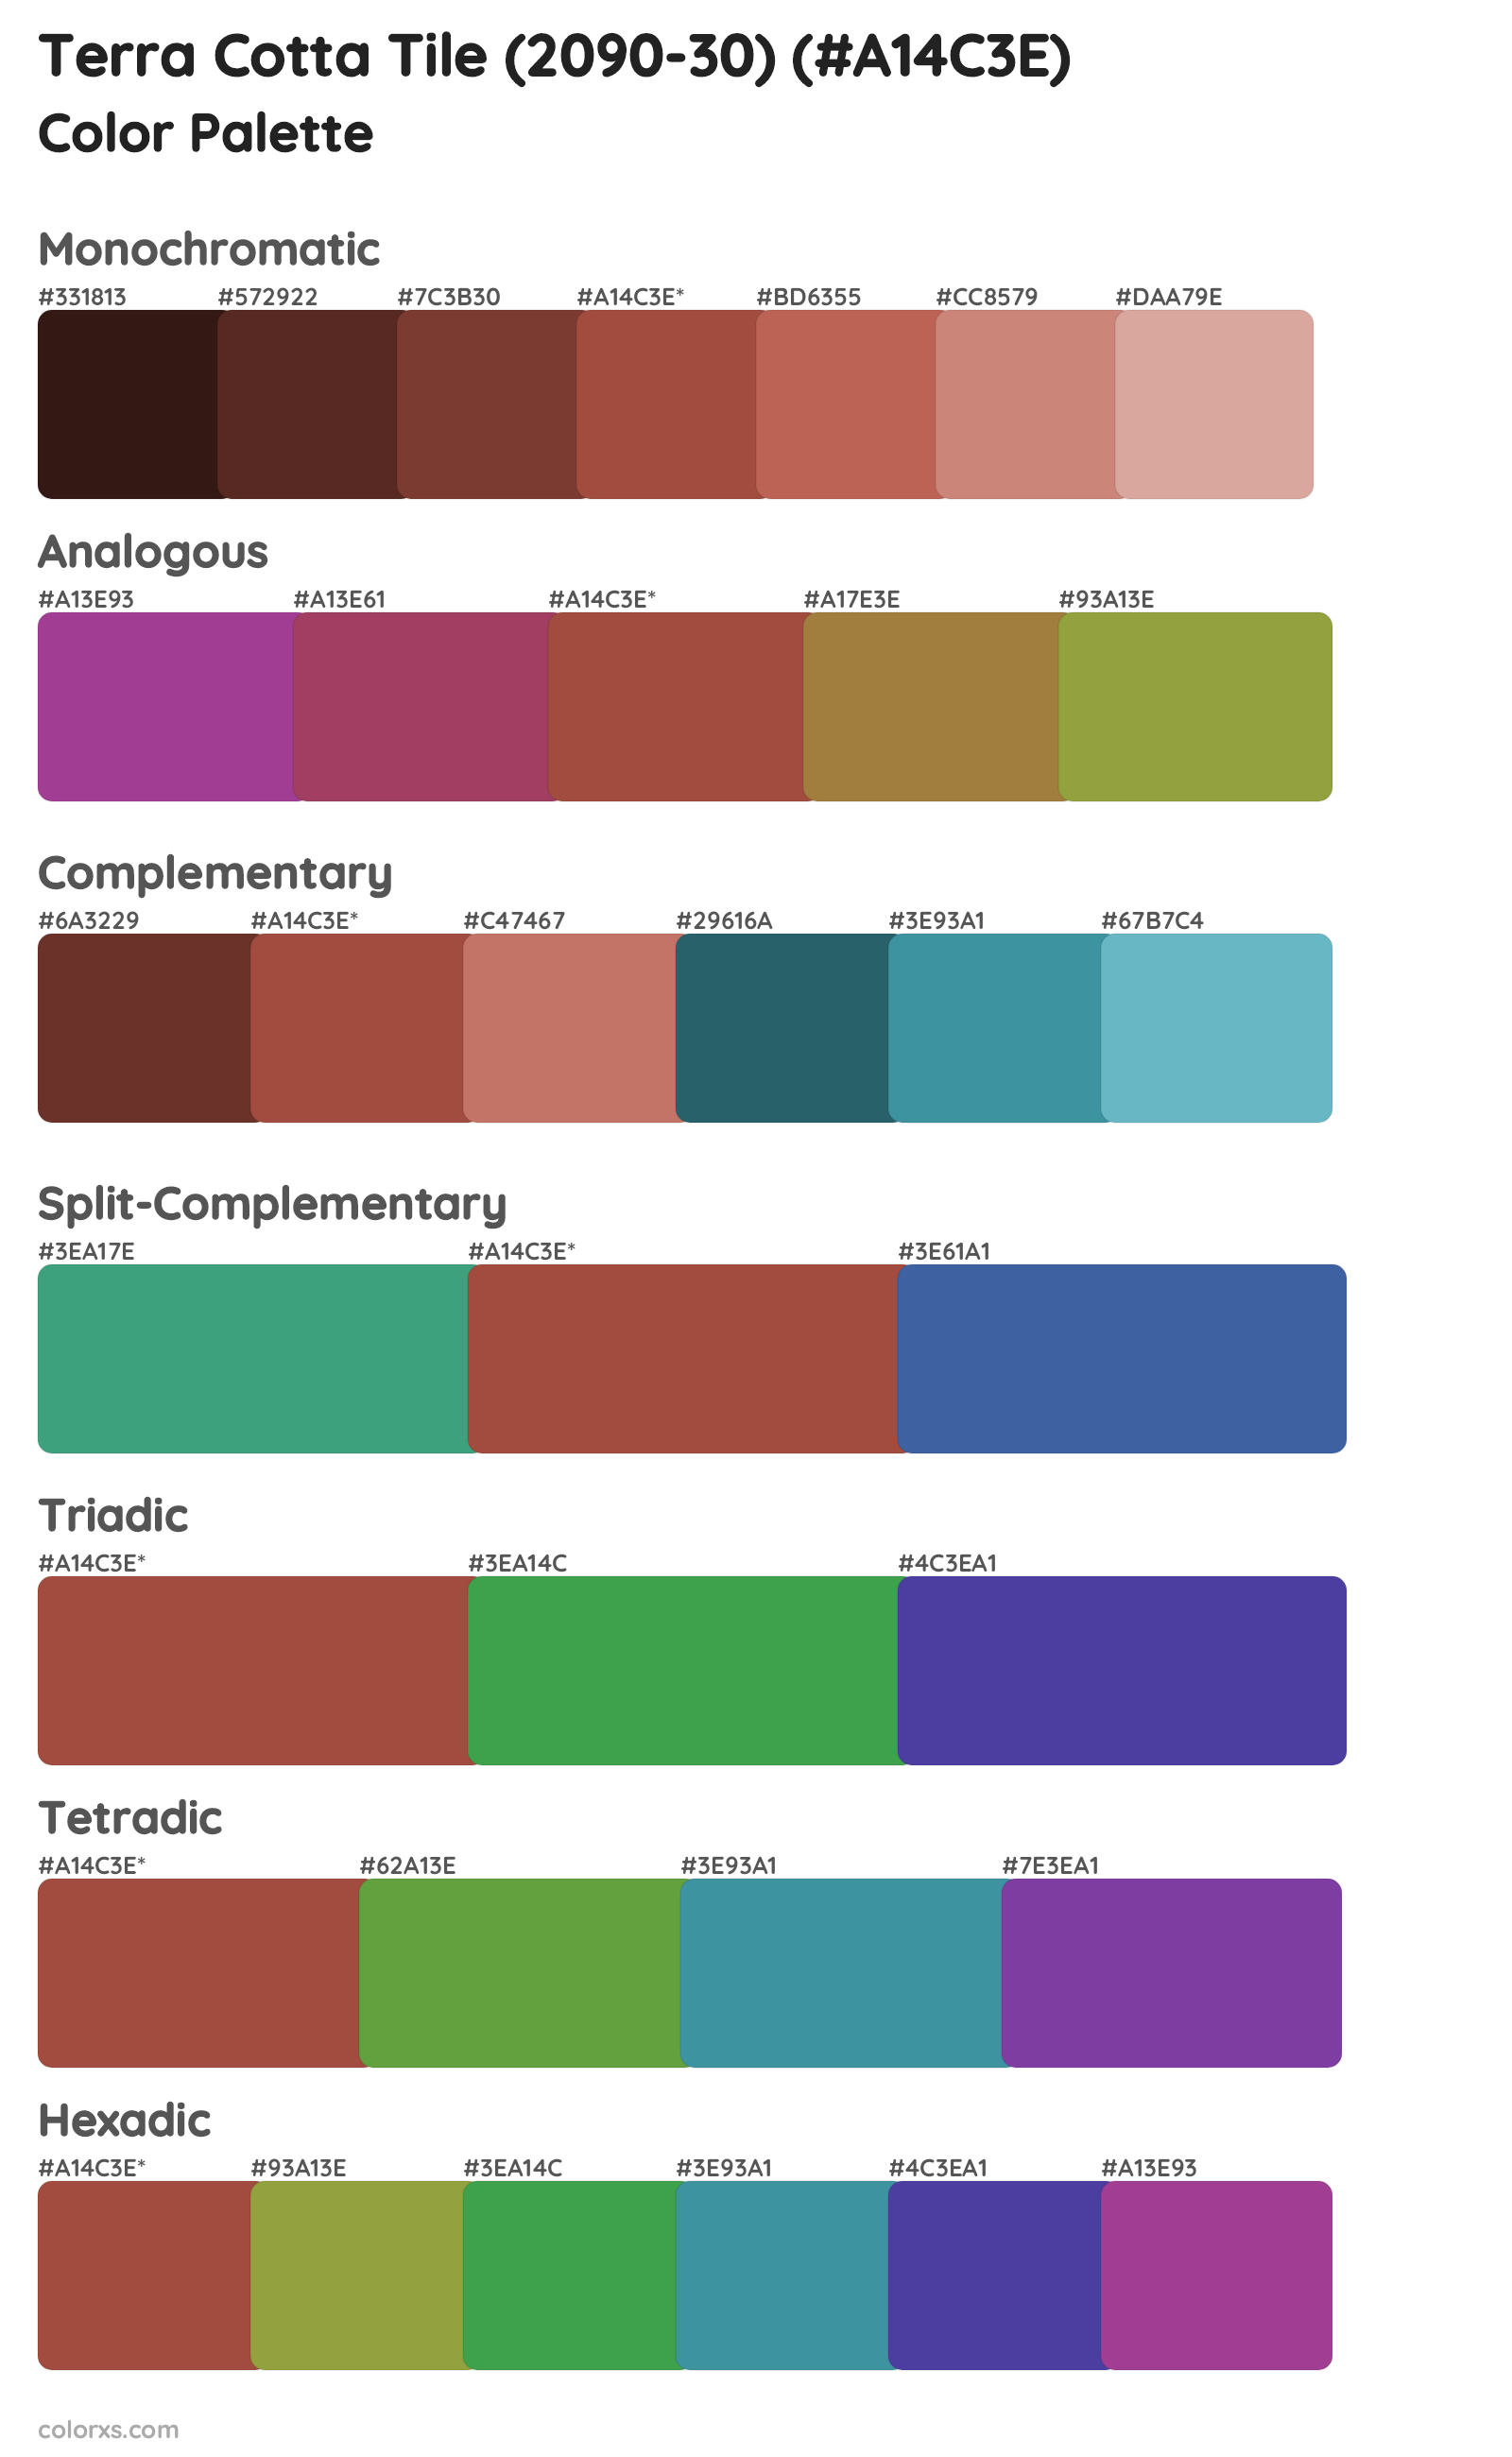 Terra Cotta Tile (2090-30) Color Scheme Palettes